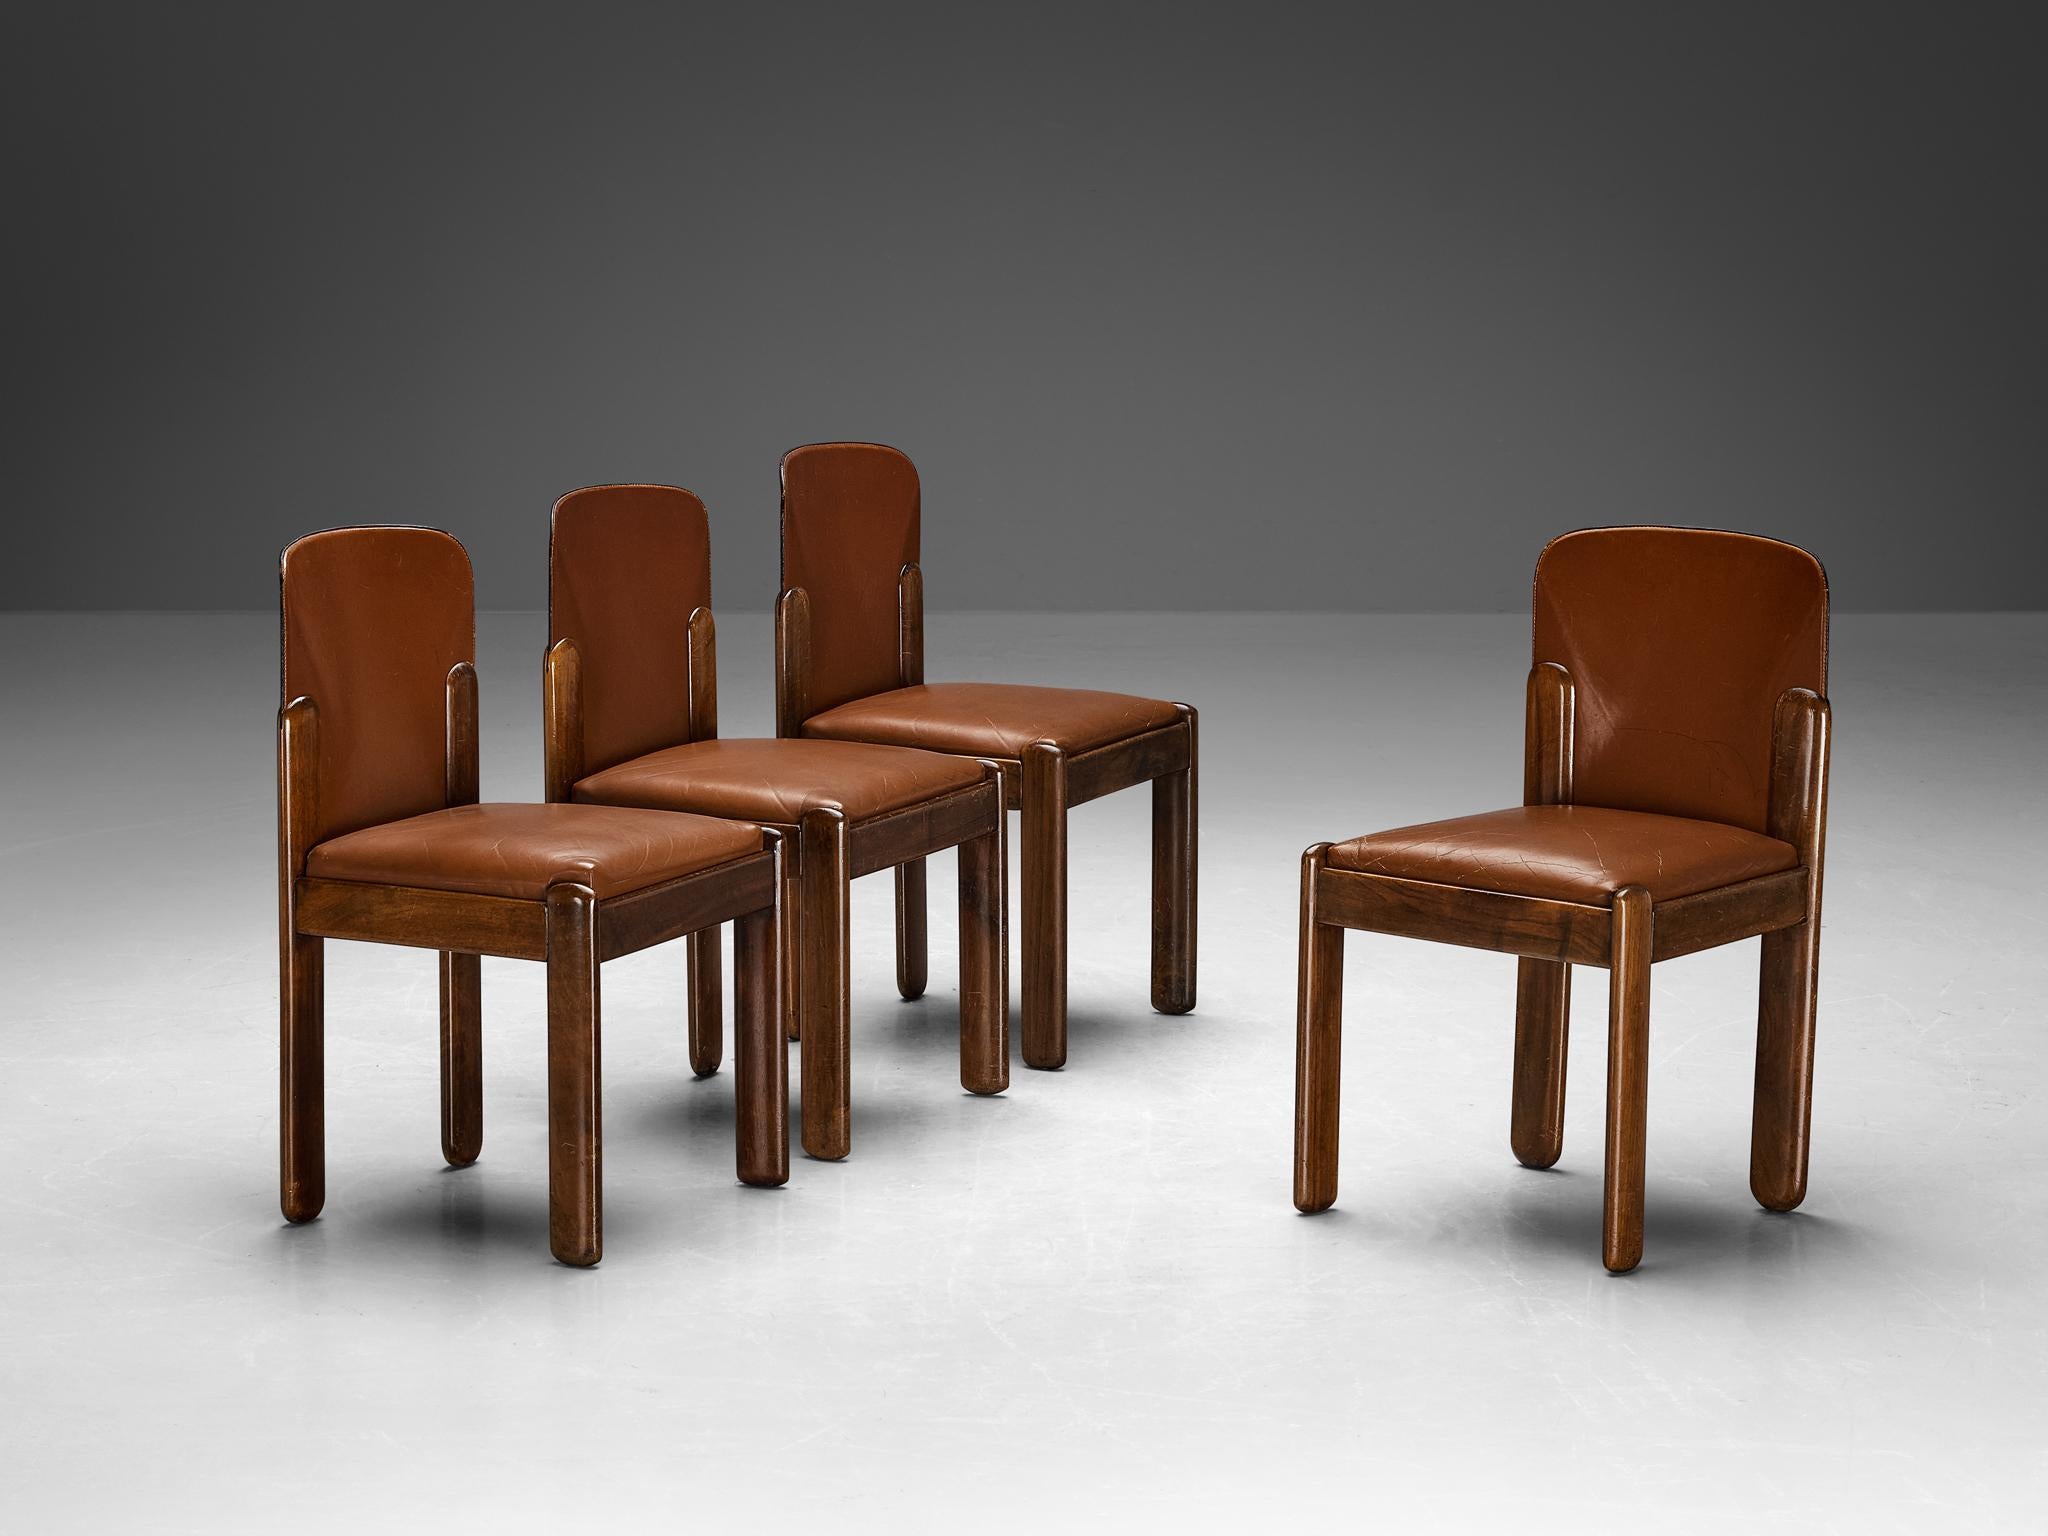 Silvio Coppola pour Bernini, ensemble de quatre chaises de salle à manger modèle 330, cuir, noyer, Italie, années 1960.

Ce magnifique ensemble de chaises de salle à manger du célèbre designer italien Silvio Coppola est une remarquable démonstration